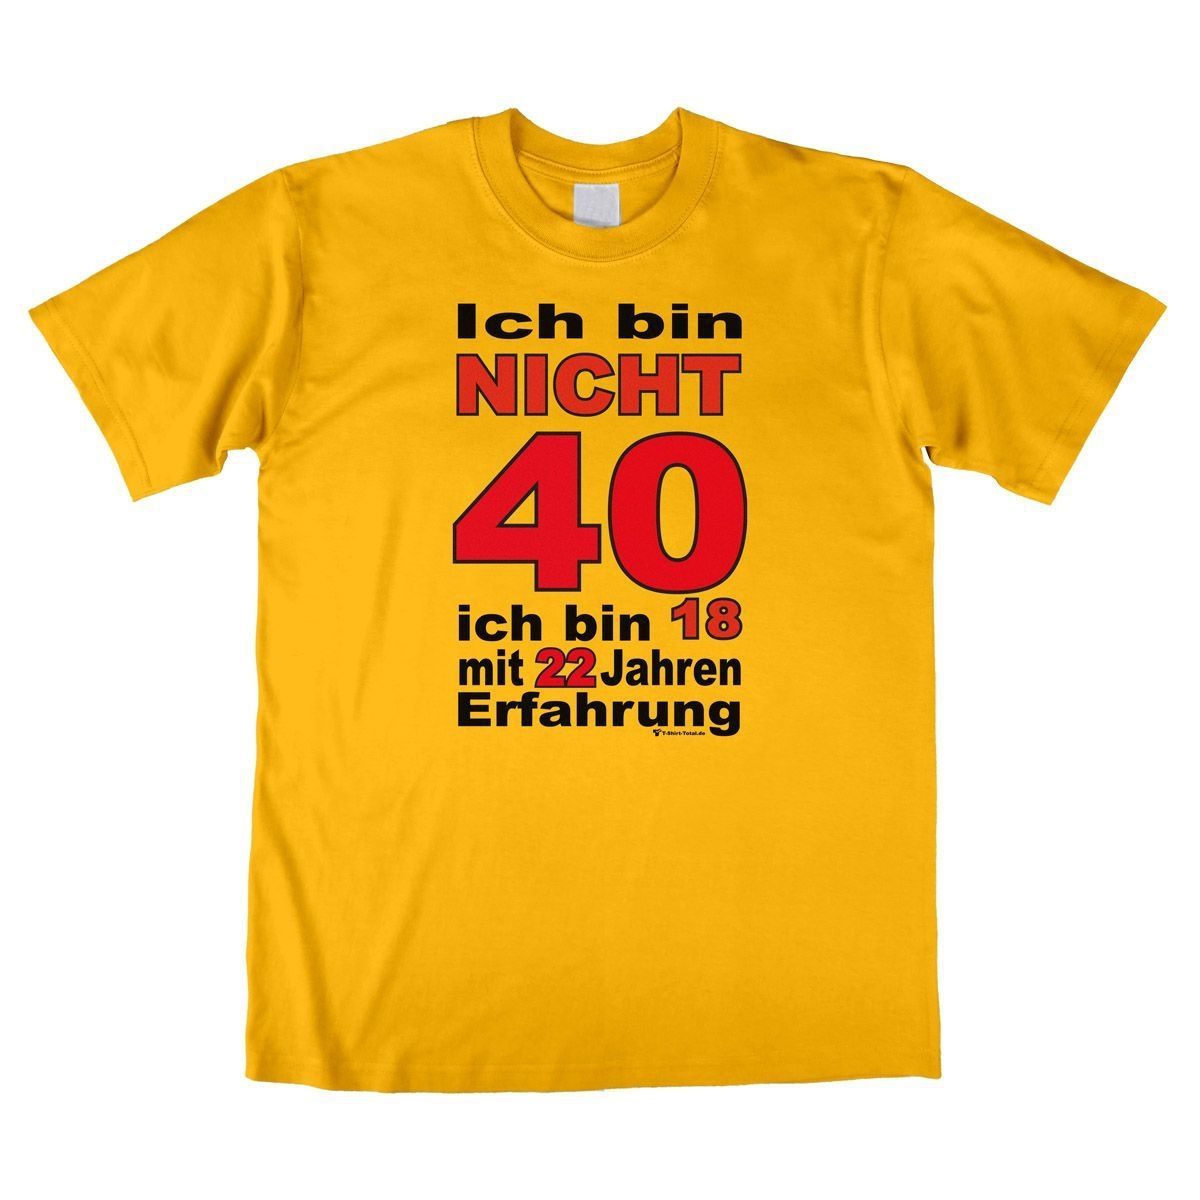 Bin nicht 40 Unisex T-Shirt gelb Extra Large